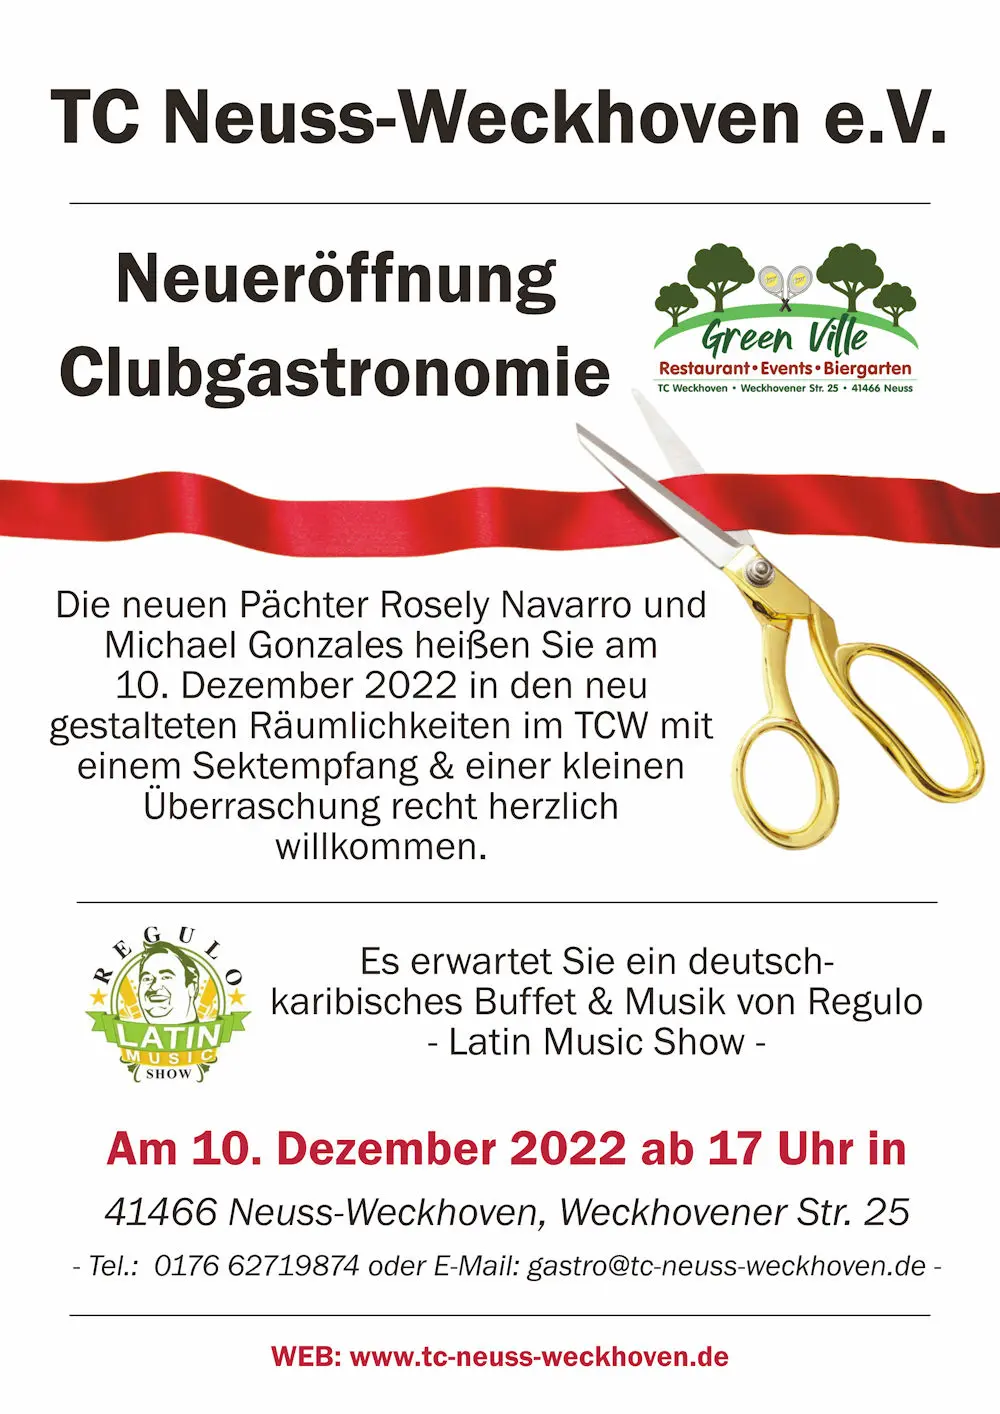 Werbeplakat Neueröffnung Clubgastronomie "Green Ville" im TC Neuss-Weckhoven e.V.